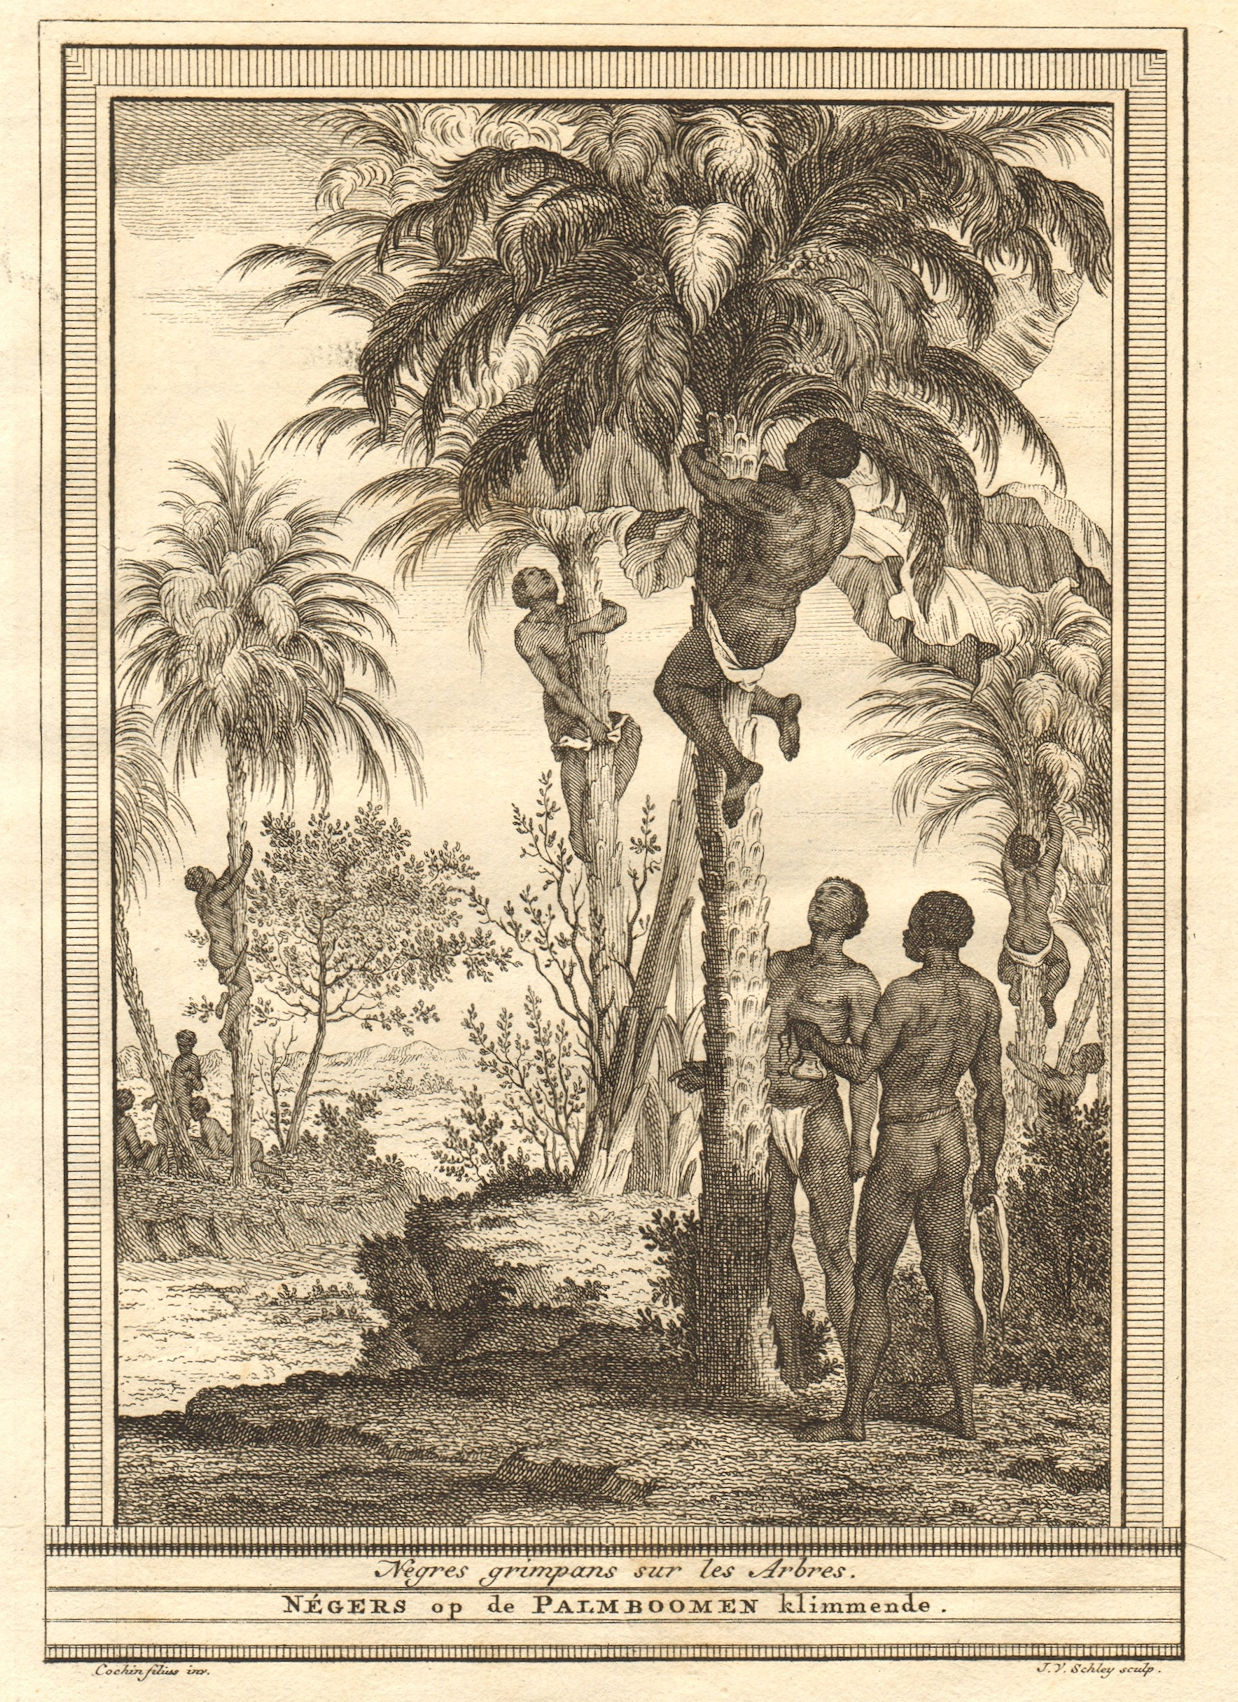 Associate Product Négres grimpans sur les arbres. Guinea-Bissau negroes climbing trees SCHLEY 1747